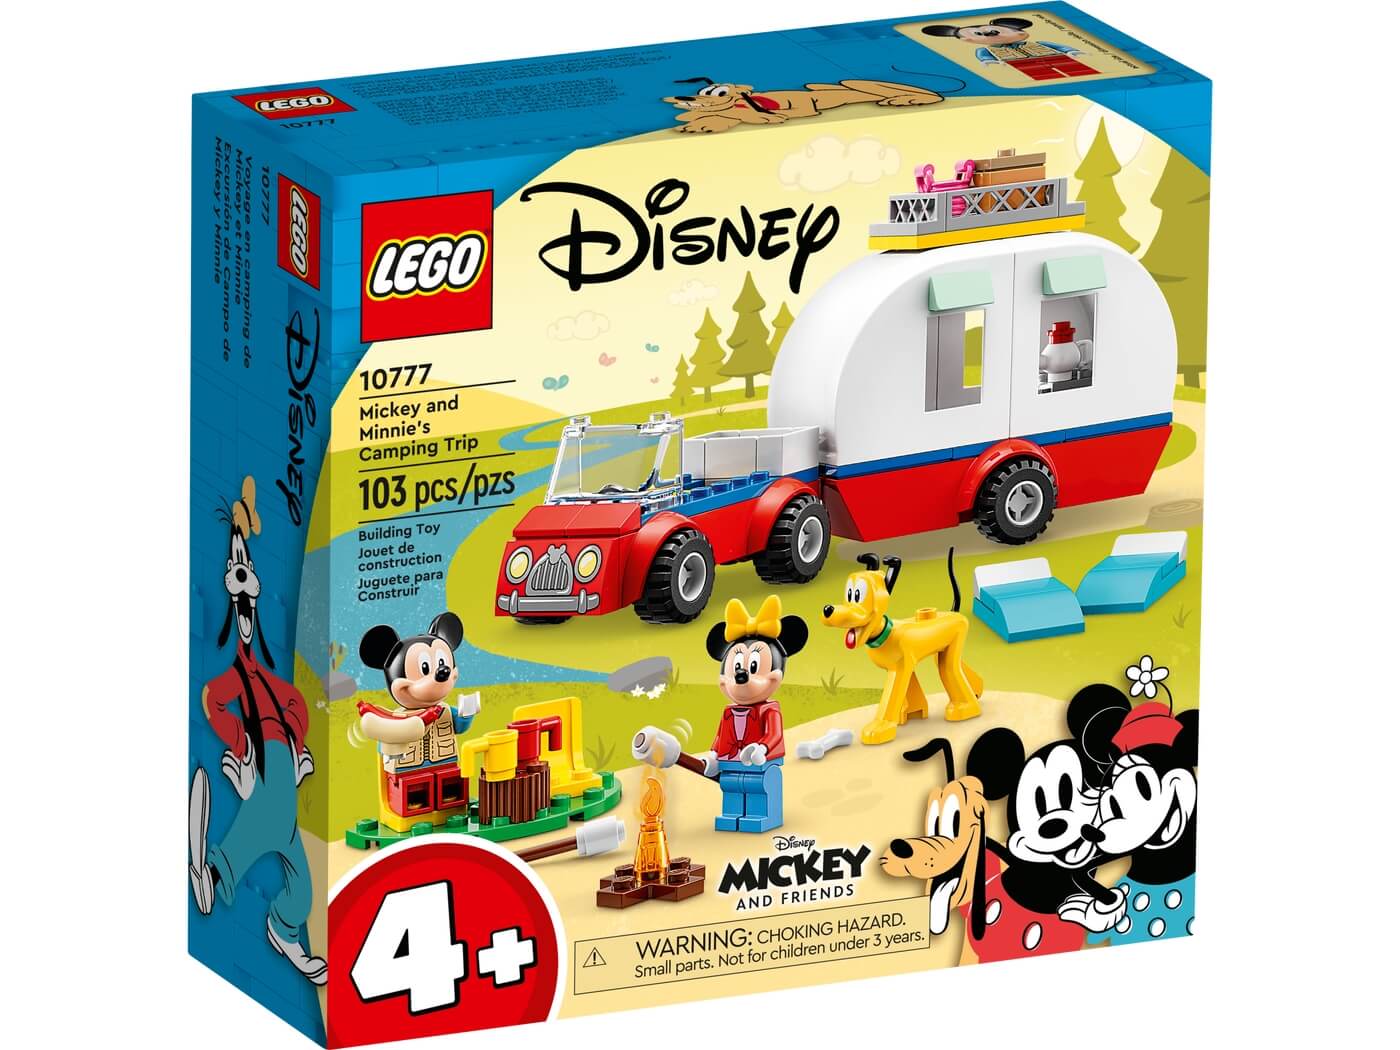 Excursion de Campo de Mickey Mouse y Minnie ( Lego 10777 ) imagen g